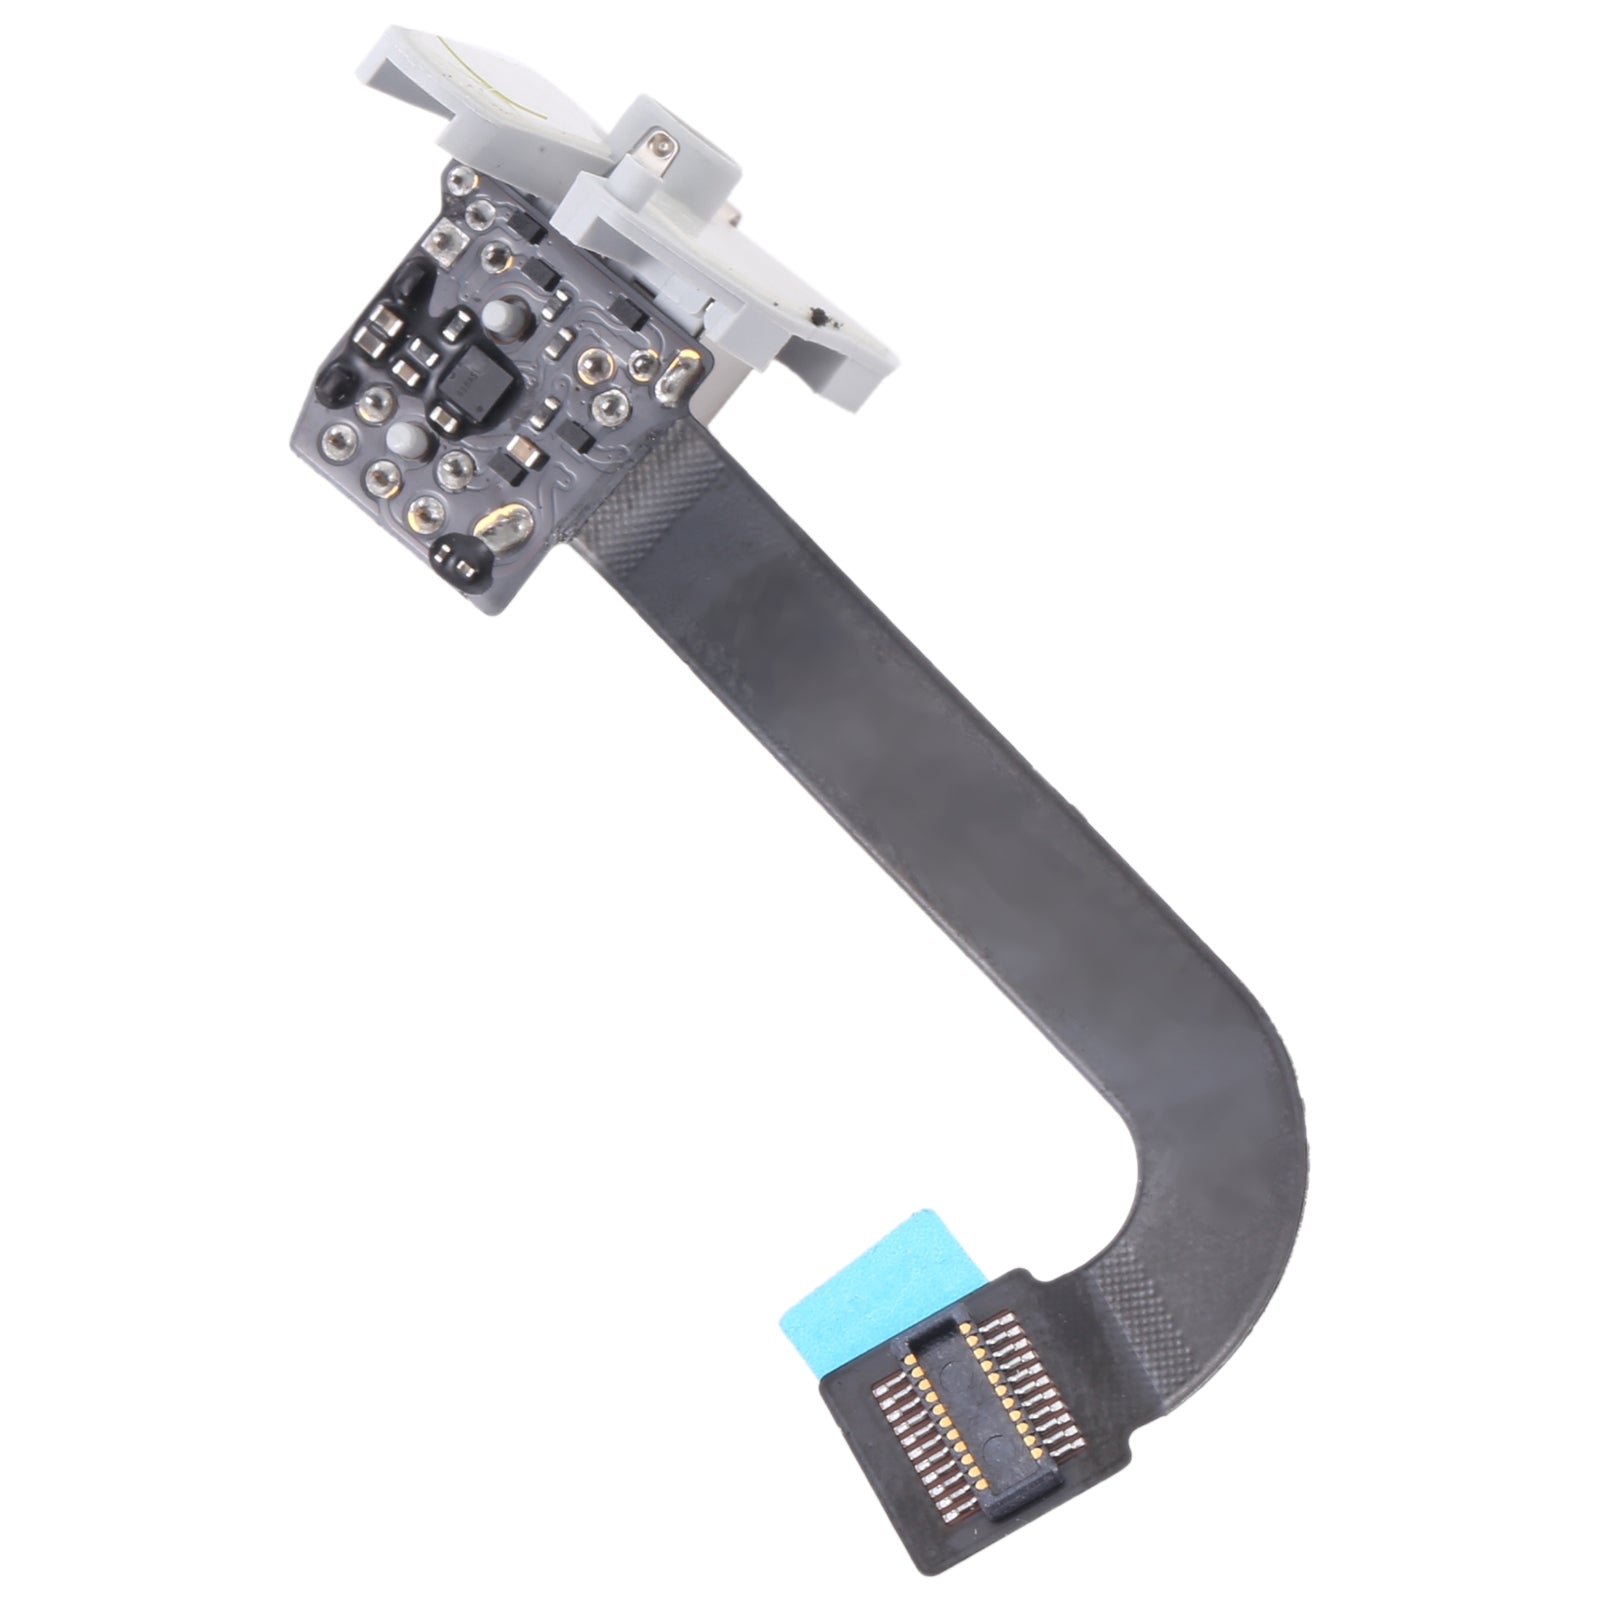 Connecteur de casque audio Flex Jack iMac 27 A1419 2012 2015